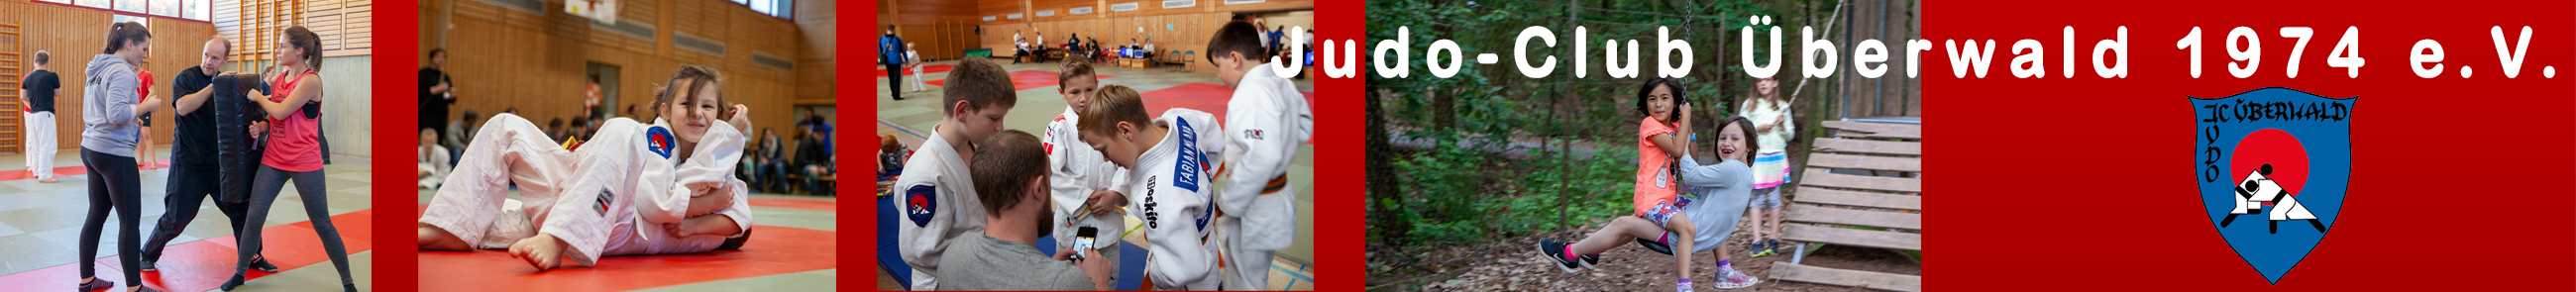 Judo-Club Überwald 1974 e.V.